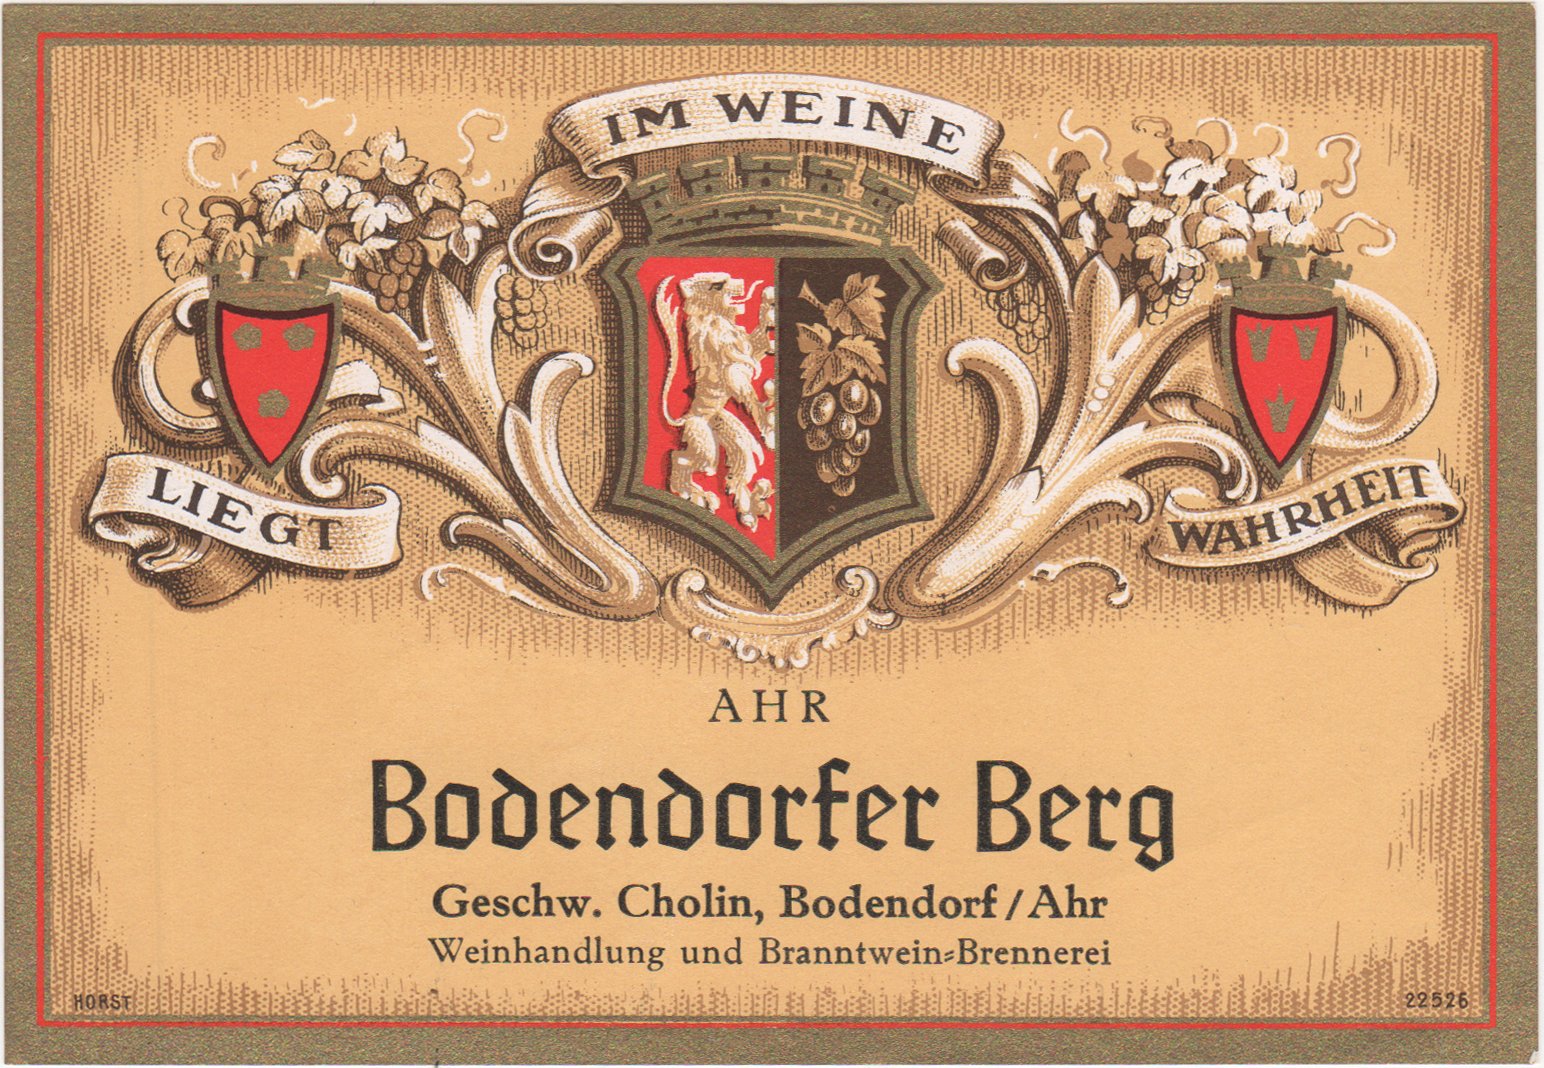 Weinflaschenetikett "Bodendorfer Berg" der Geschwister Cholin, Bodendorf/Ahr (Heimatarchiv Bad Bodendorf CC BY-NC-SA)